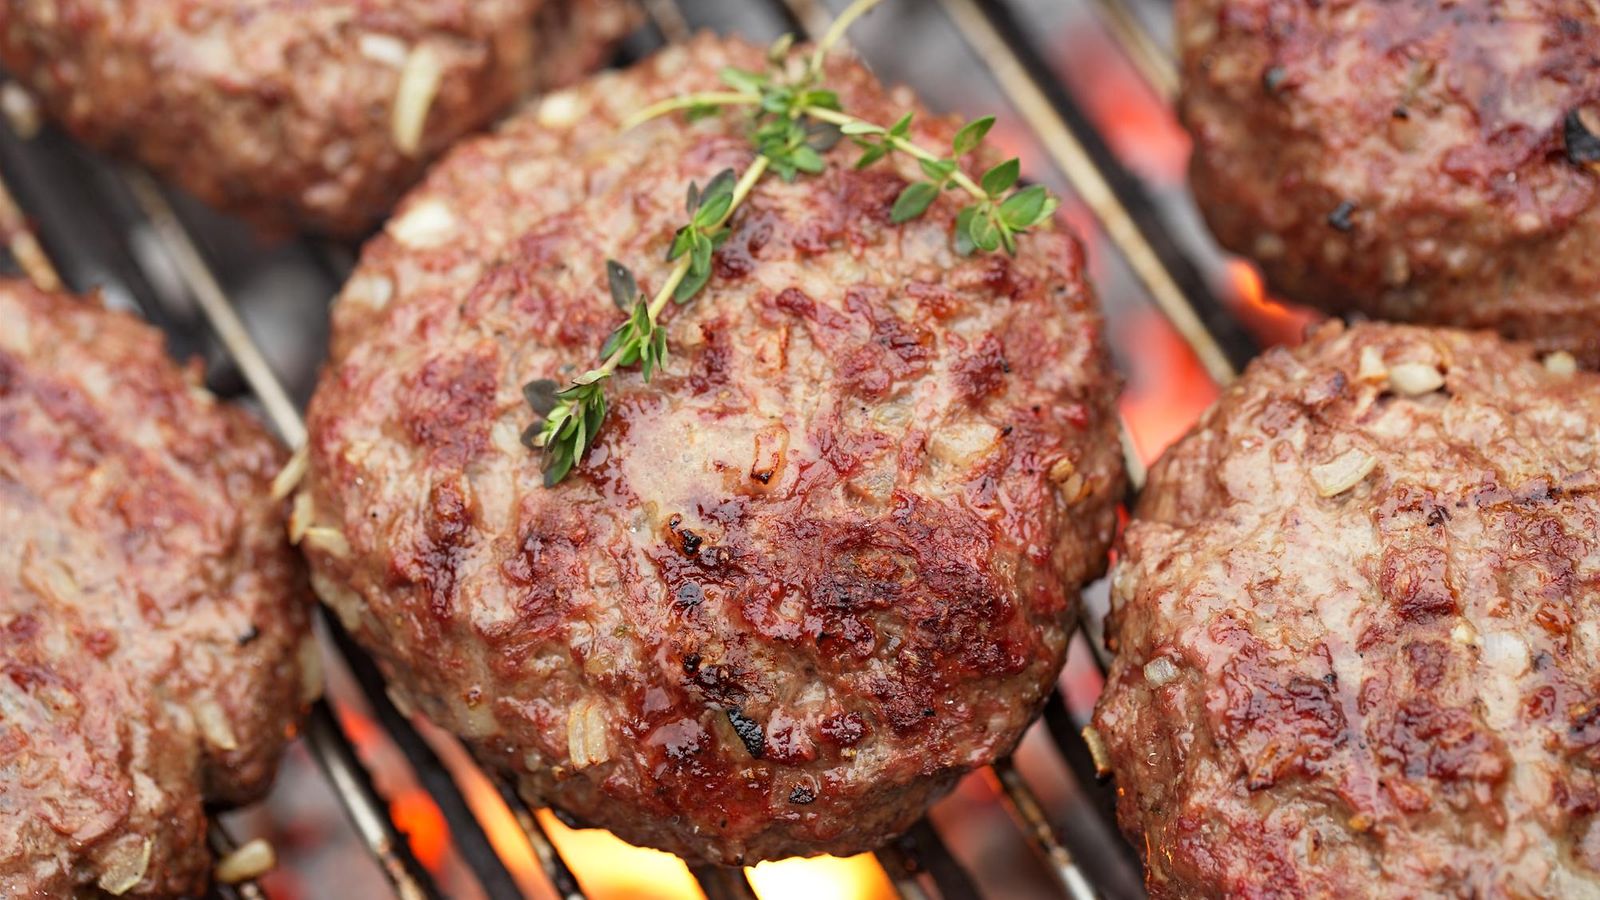 Tiedätkö, kuinka tuore liha grillissäsi tirisee? | Makuja | MTV Uutiset